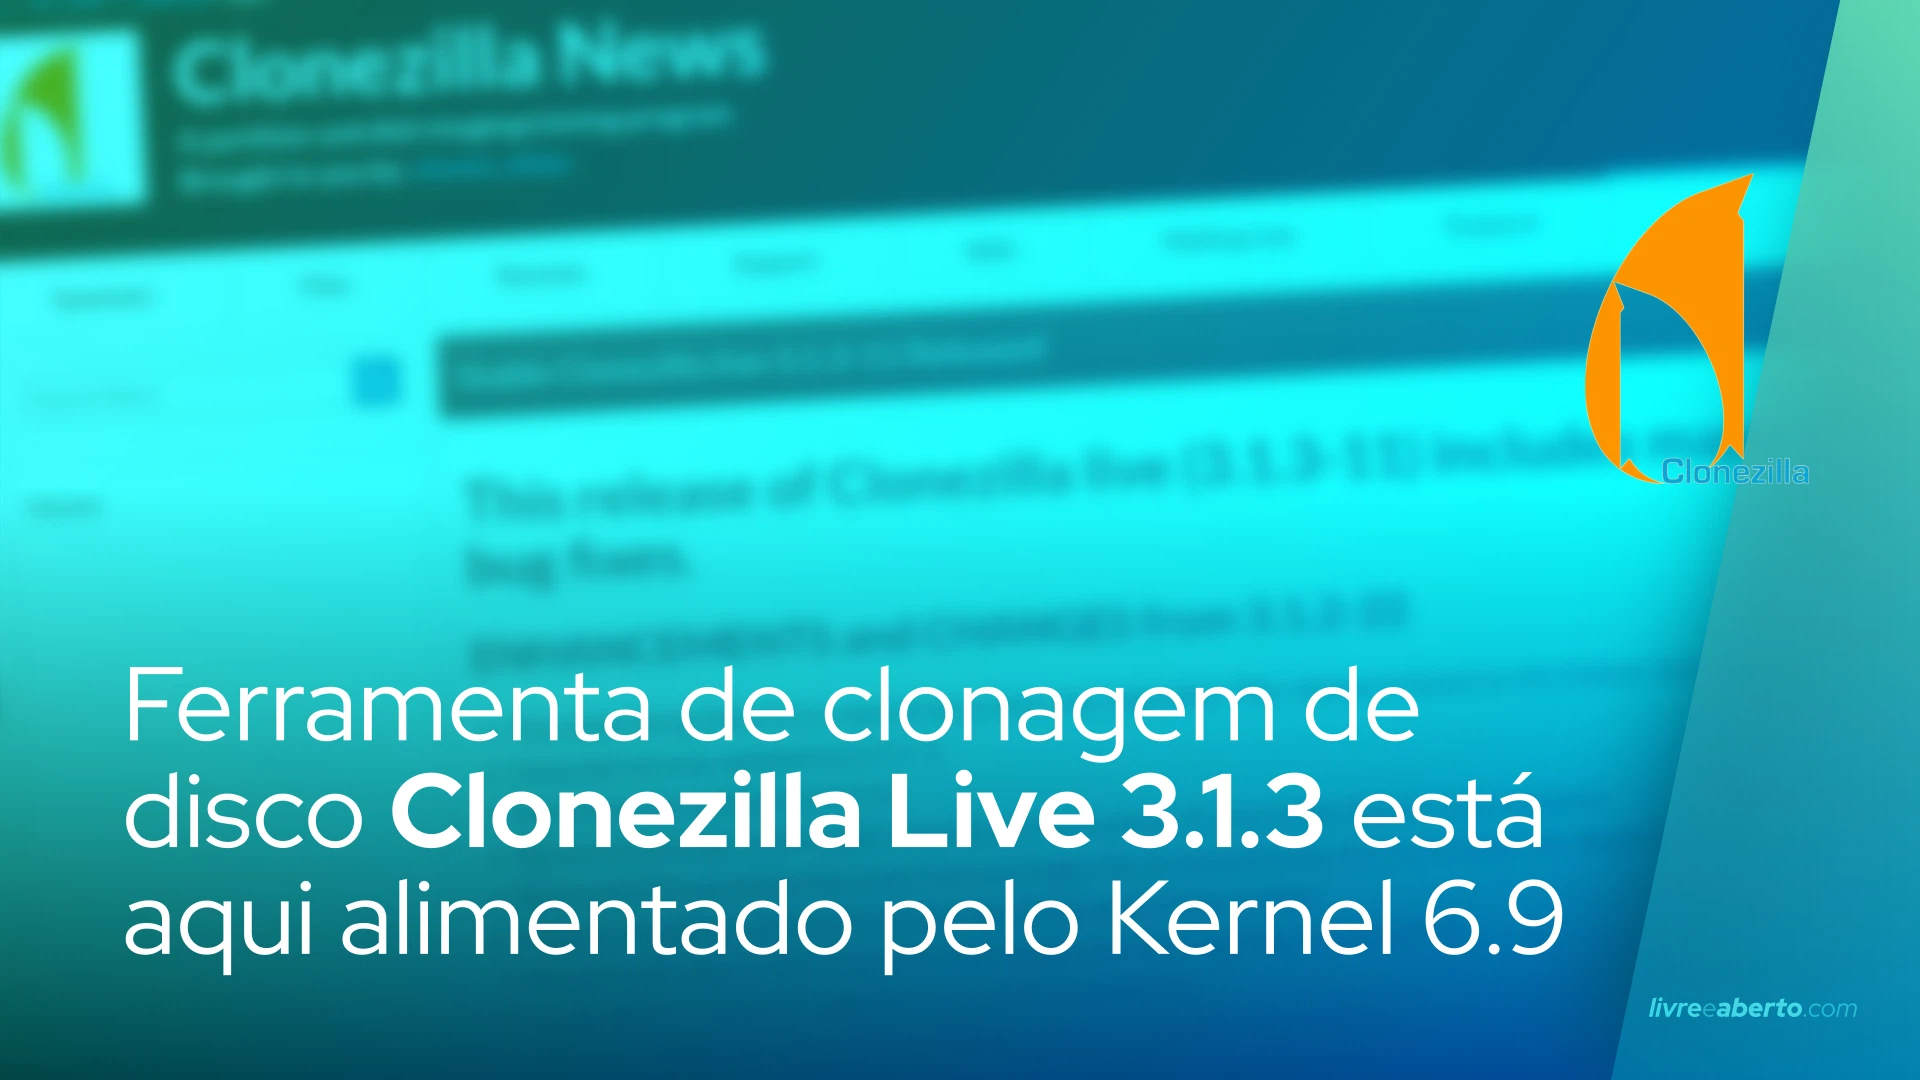 Ferramenta de clonagem de disco Clonezilla Live 3.1.3 está aqui alimentado pelo Kernel Linux 6.9